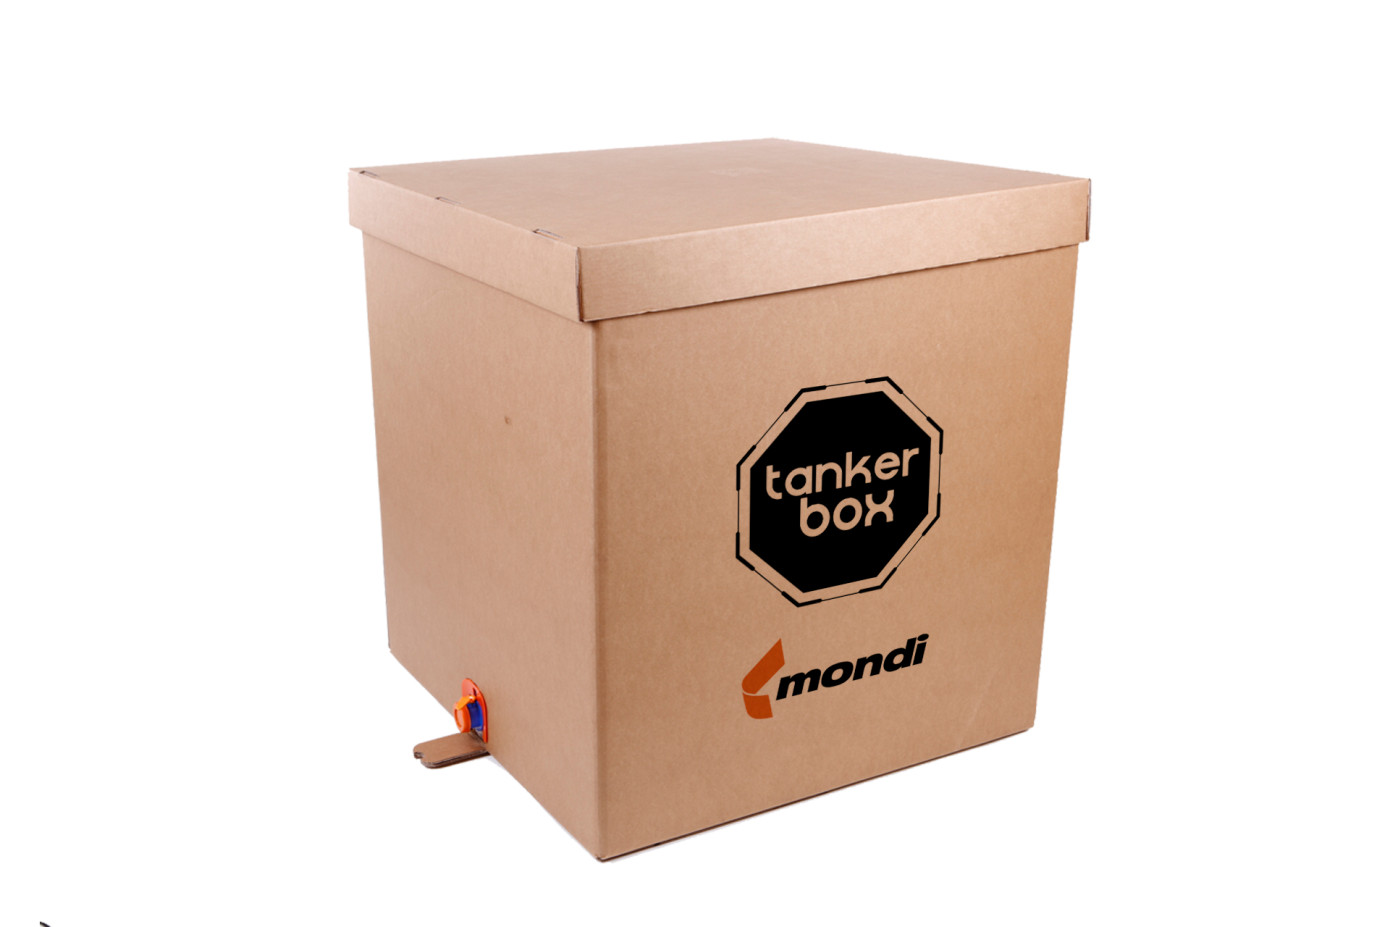 Турецкая Aromsa будет использовать инновационное упаковочное решение Mondi